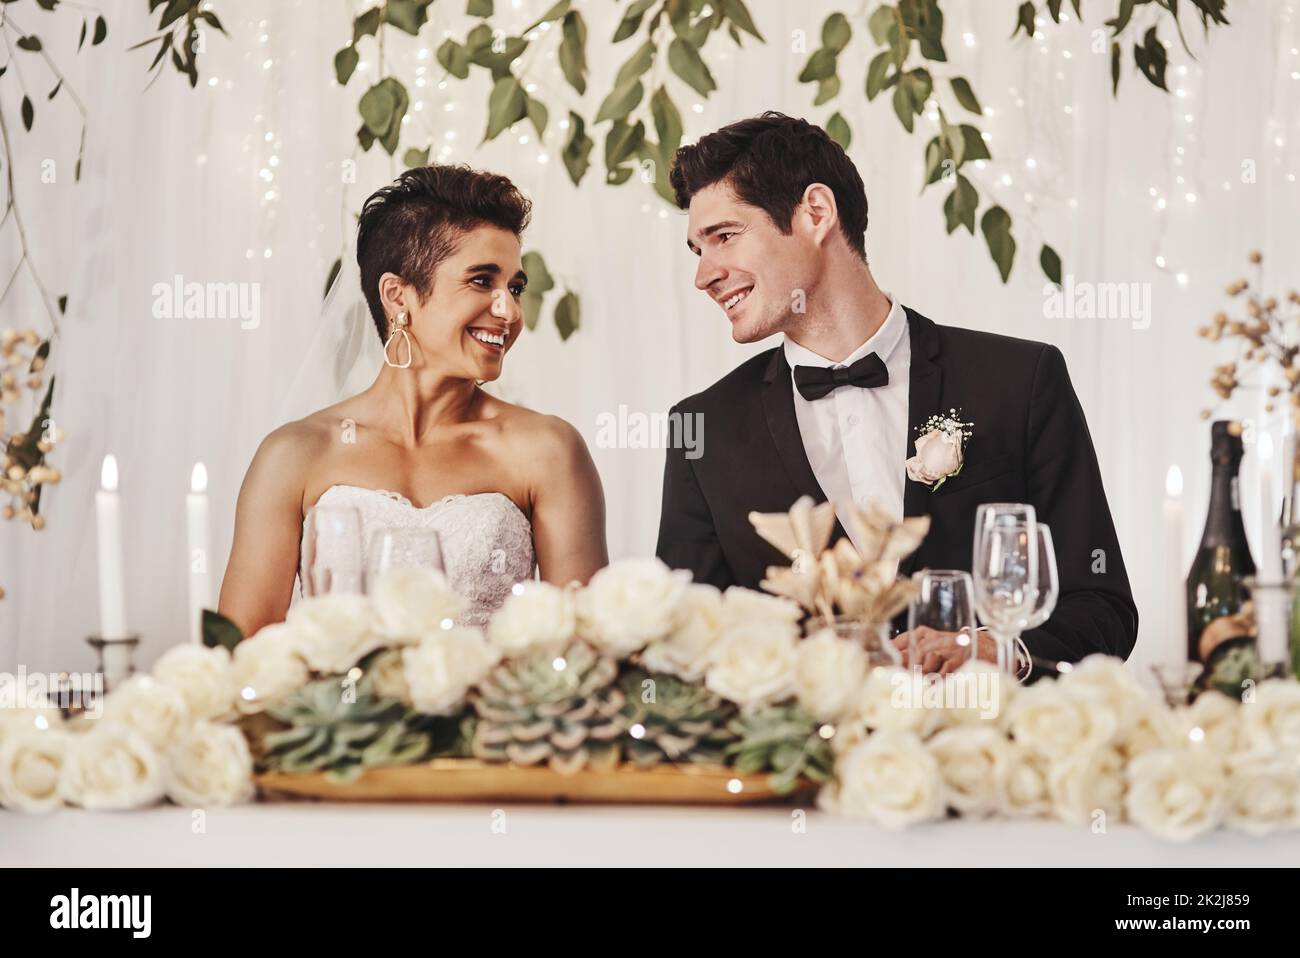 Ich kann es kaum erwarten, hier zu verharren. Aufnahme eines jungen Paares, das bei ihrem Hochzeitsempfang zusammen sitzt. Stockfoto